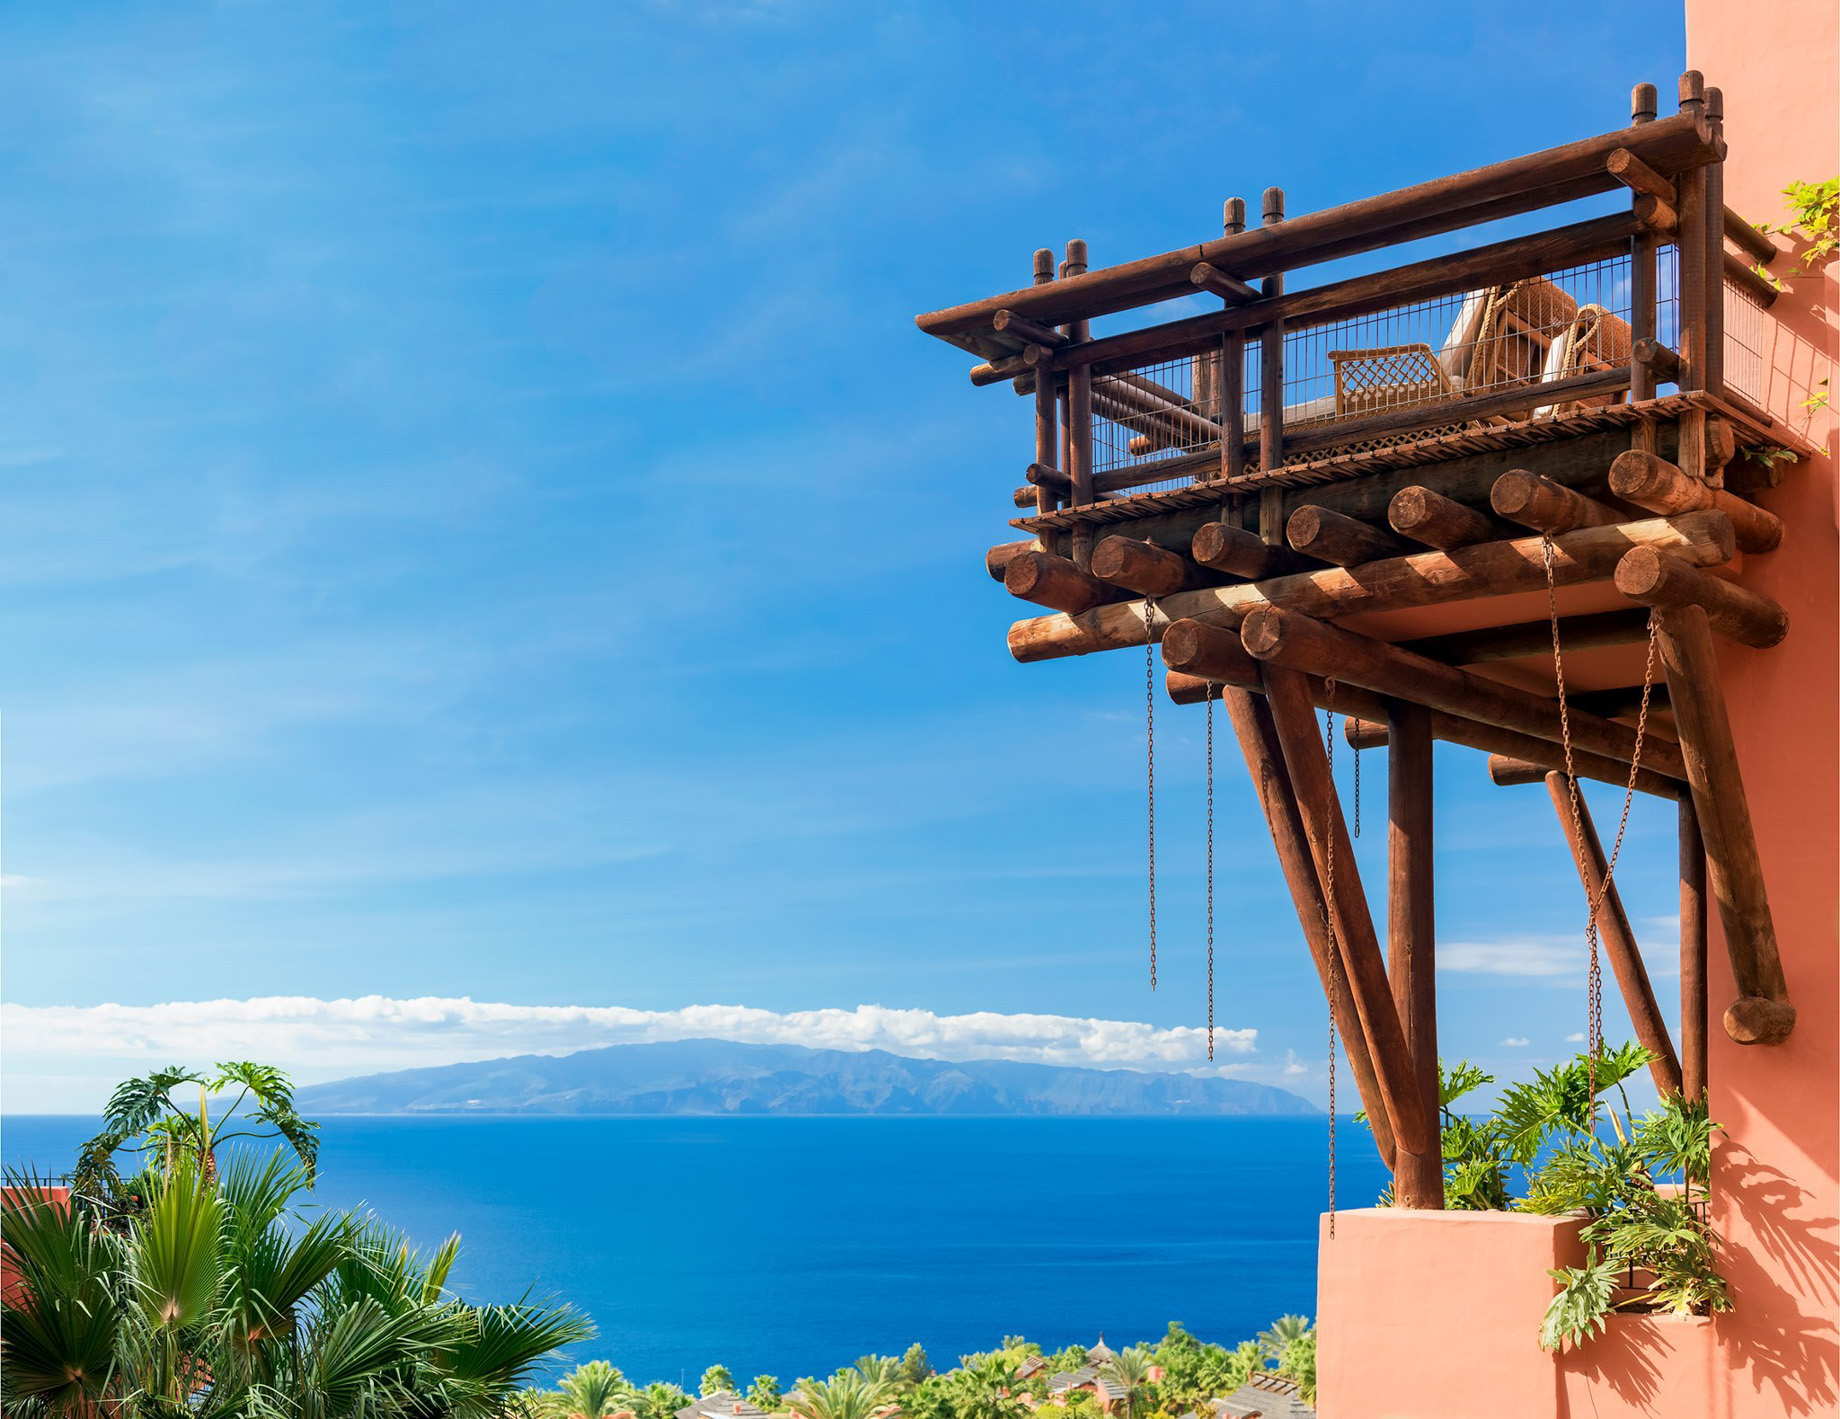 The Ritz-Carlton, Abama Resort – Santa Cruz de Tenerife, Spain – Property Aerial Ocean View